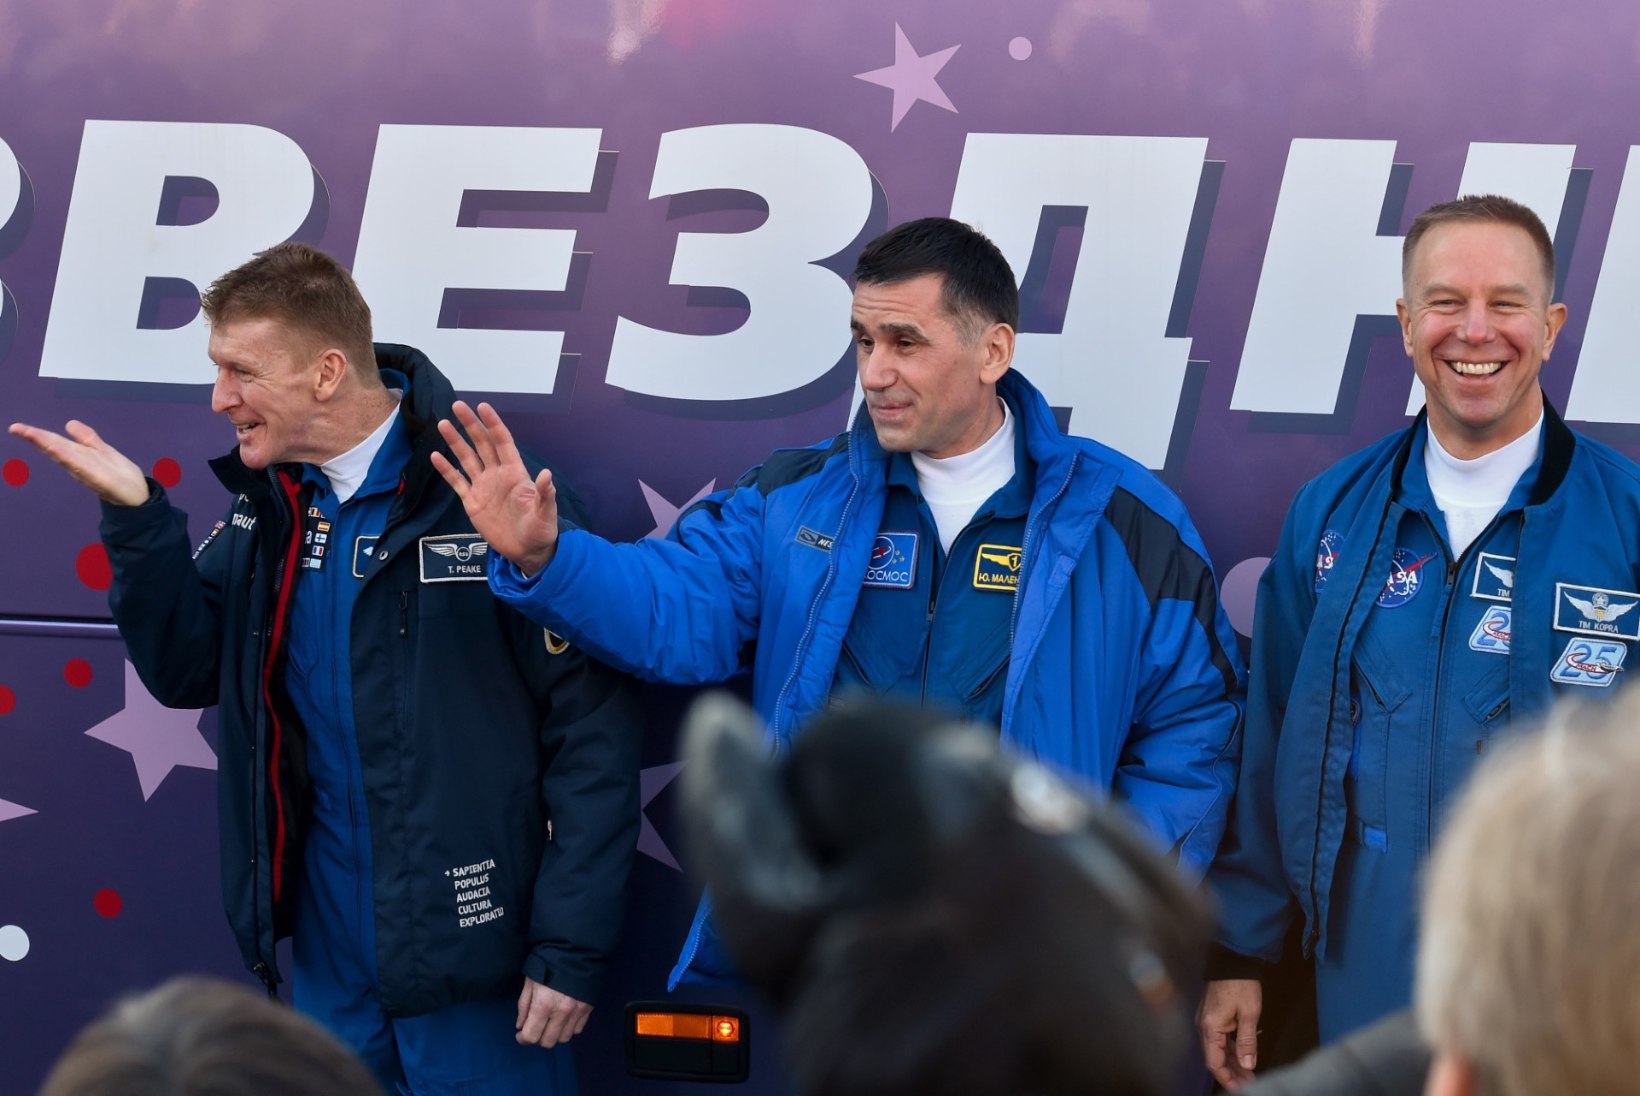 GALERII | Uus kolmik stardib Baikonurilt rahvusvahelisse kosmosejaama